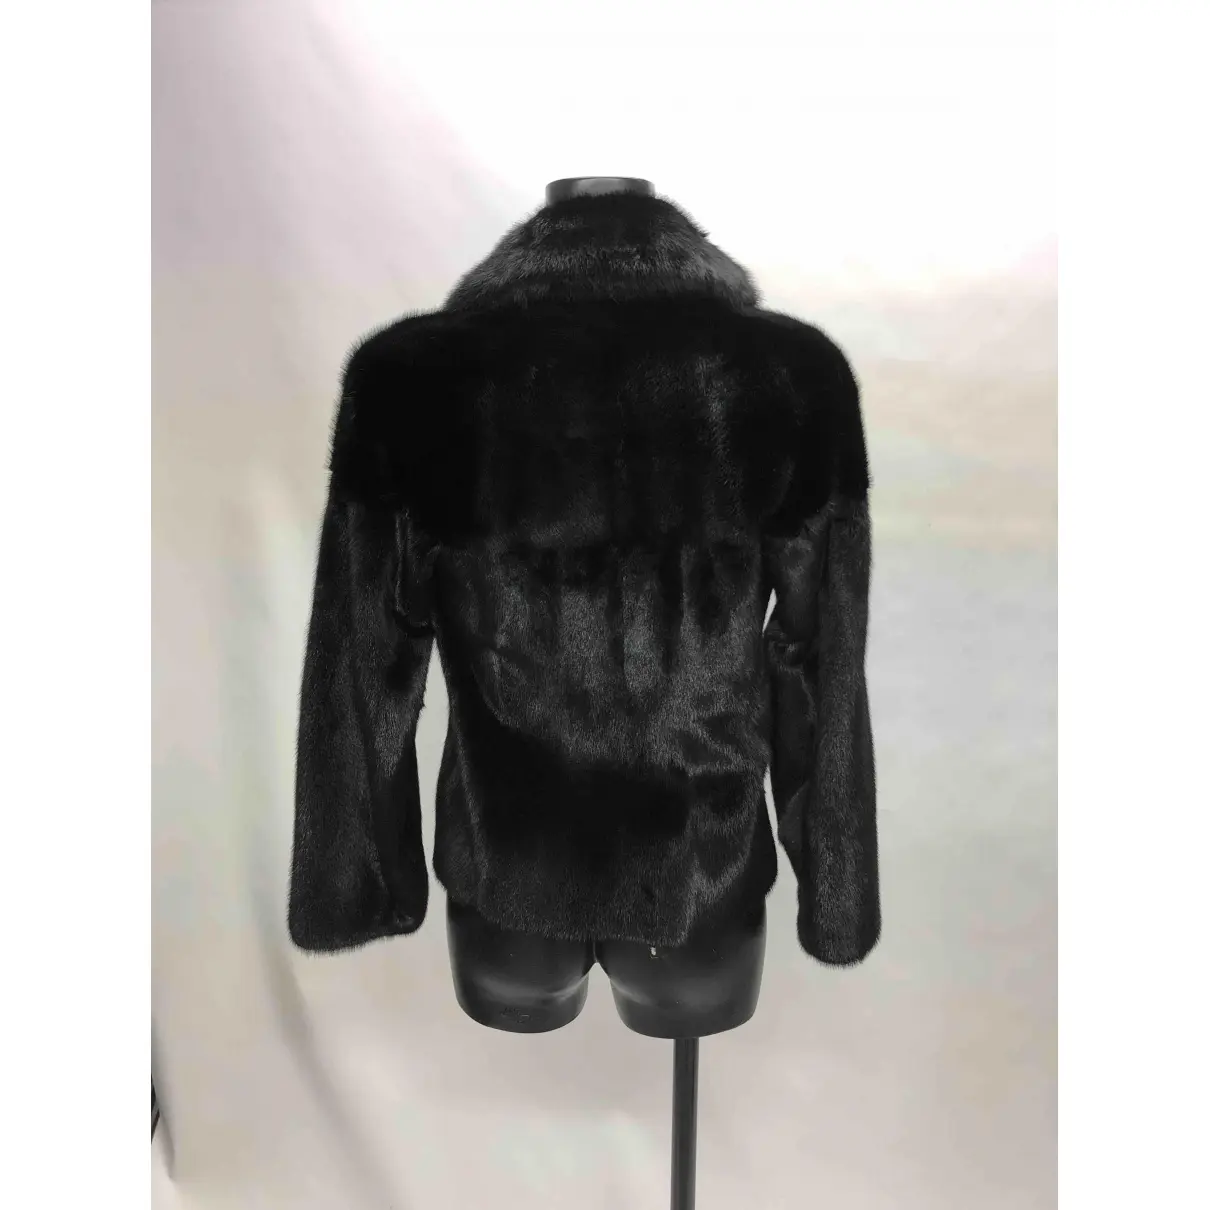 Buy Bruno Magli Mink coat online